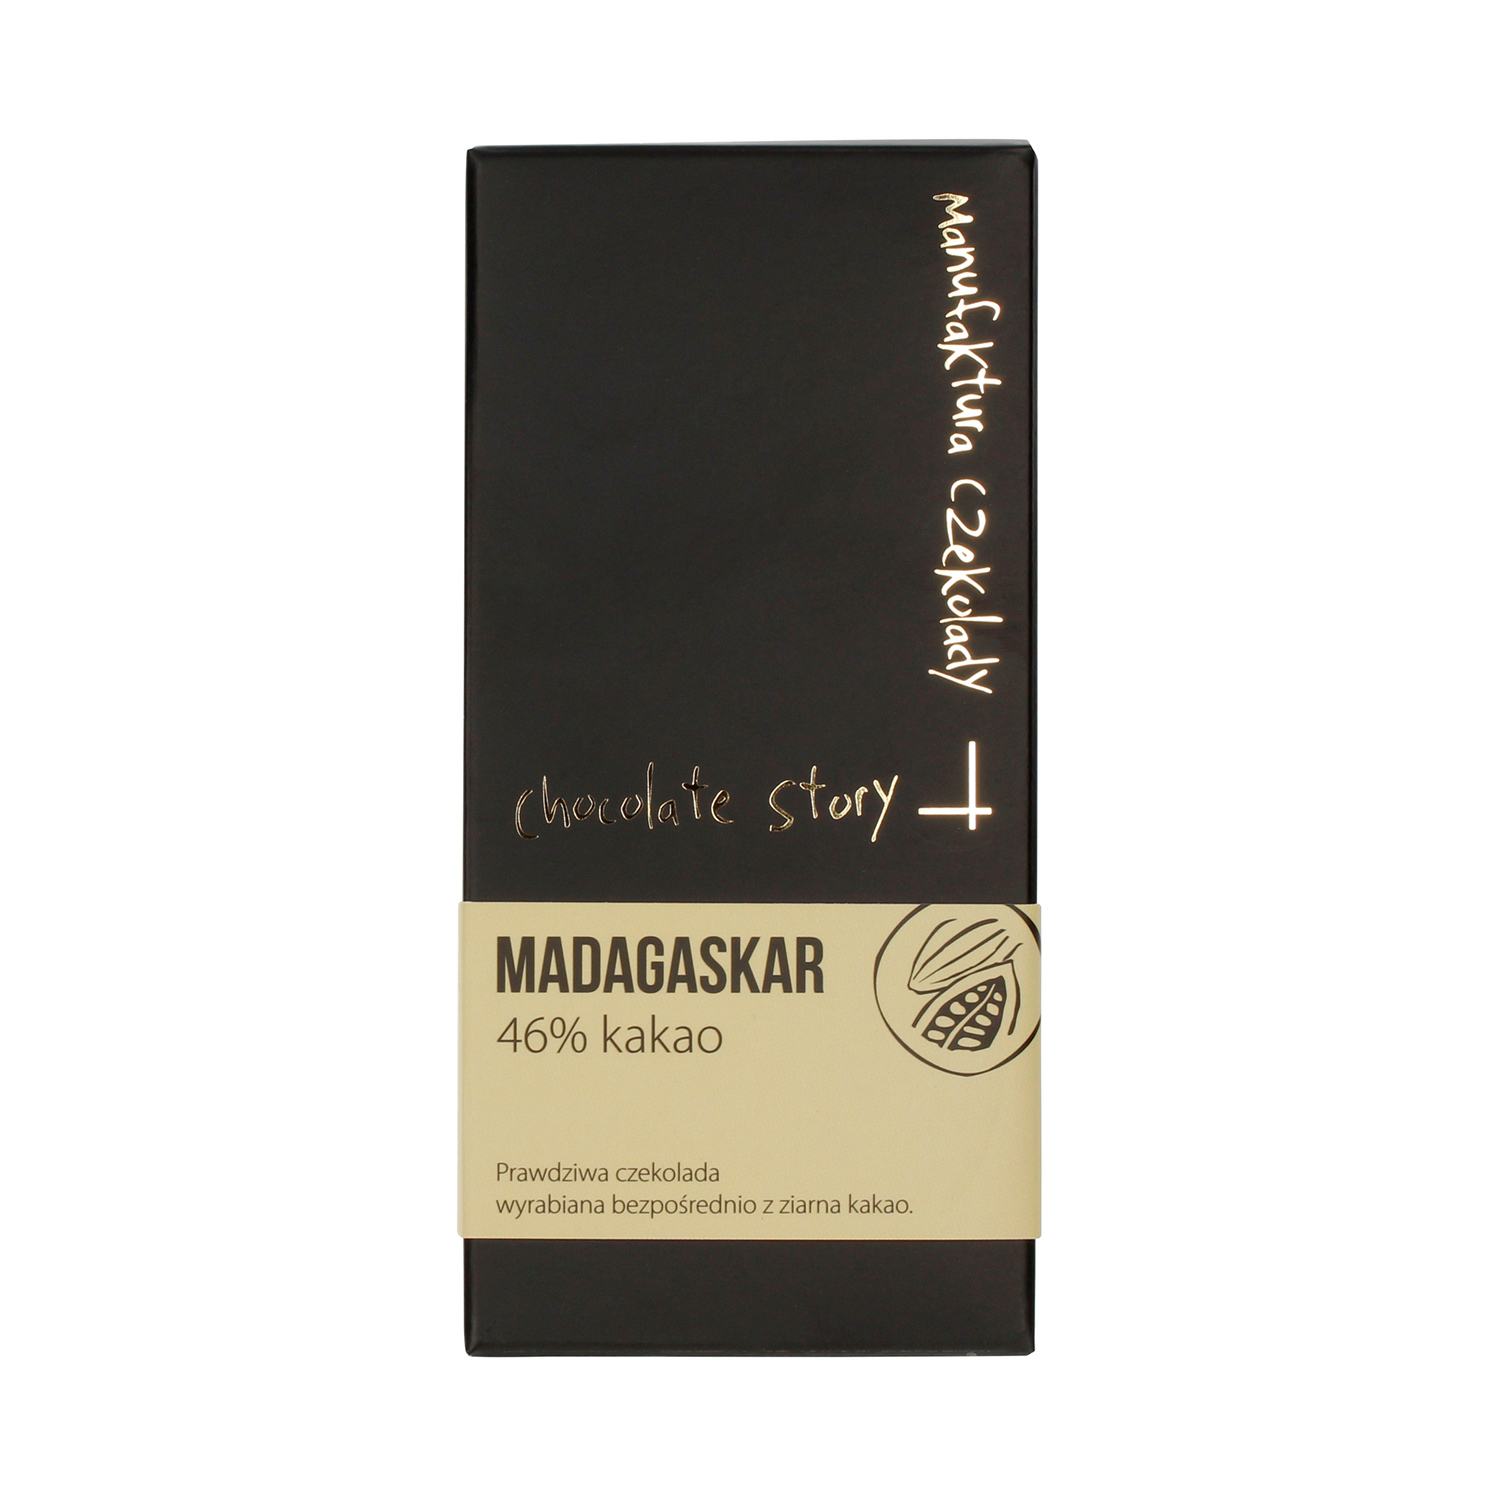 Manufaktura Czekolady - Chocolate 46% cocoa from Madagascar